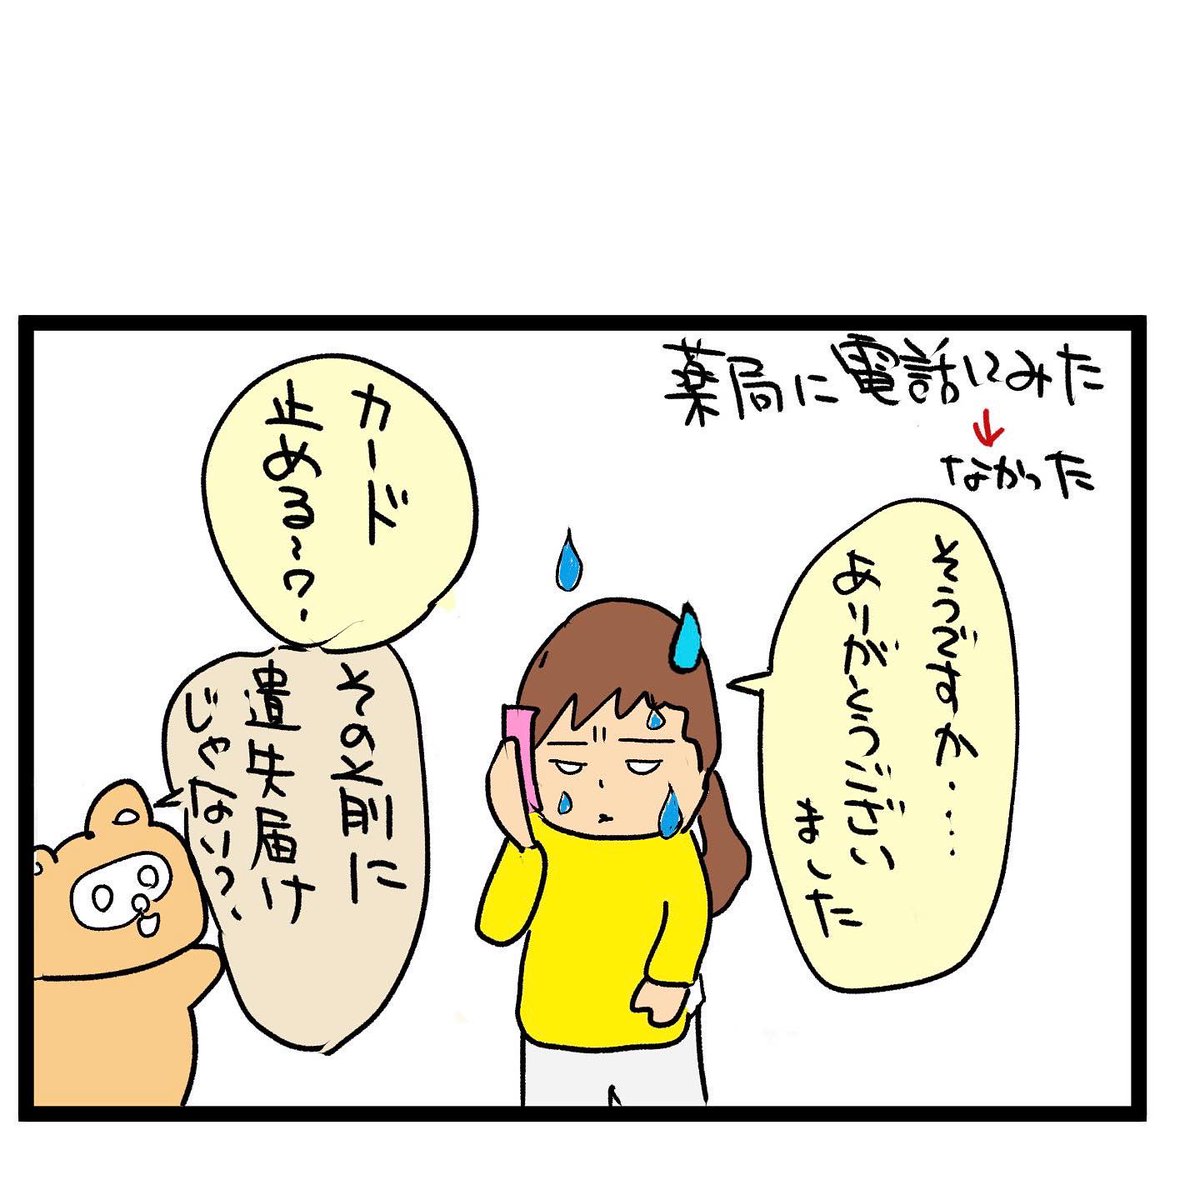 #四コマ漫画
財布無くした!? 